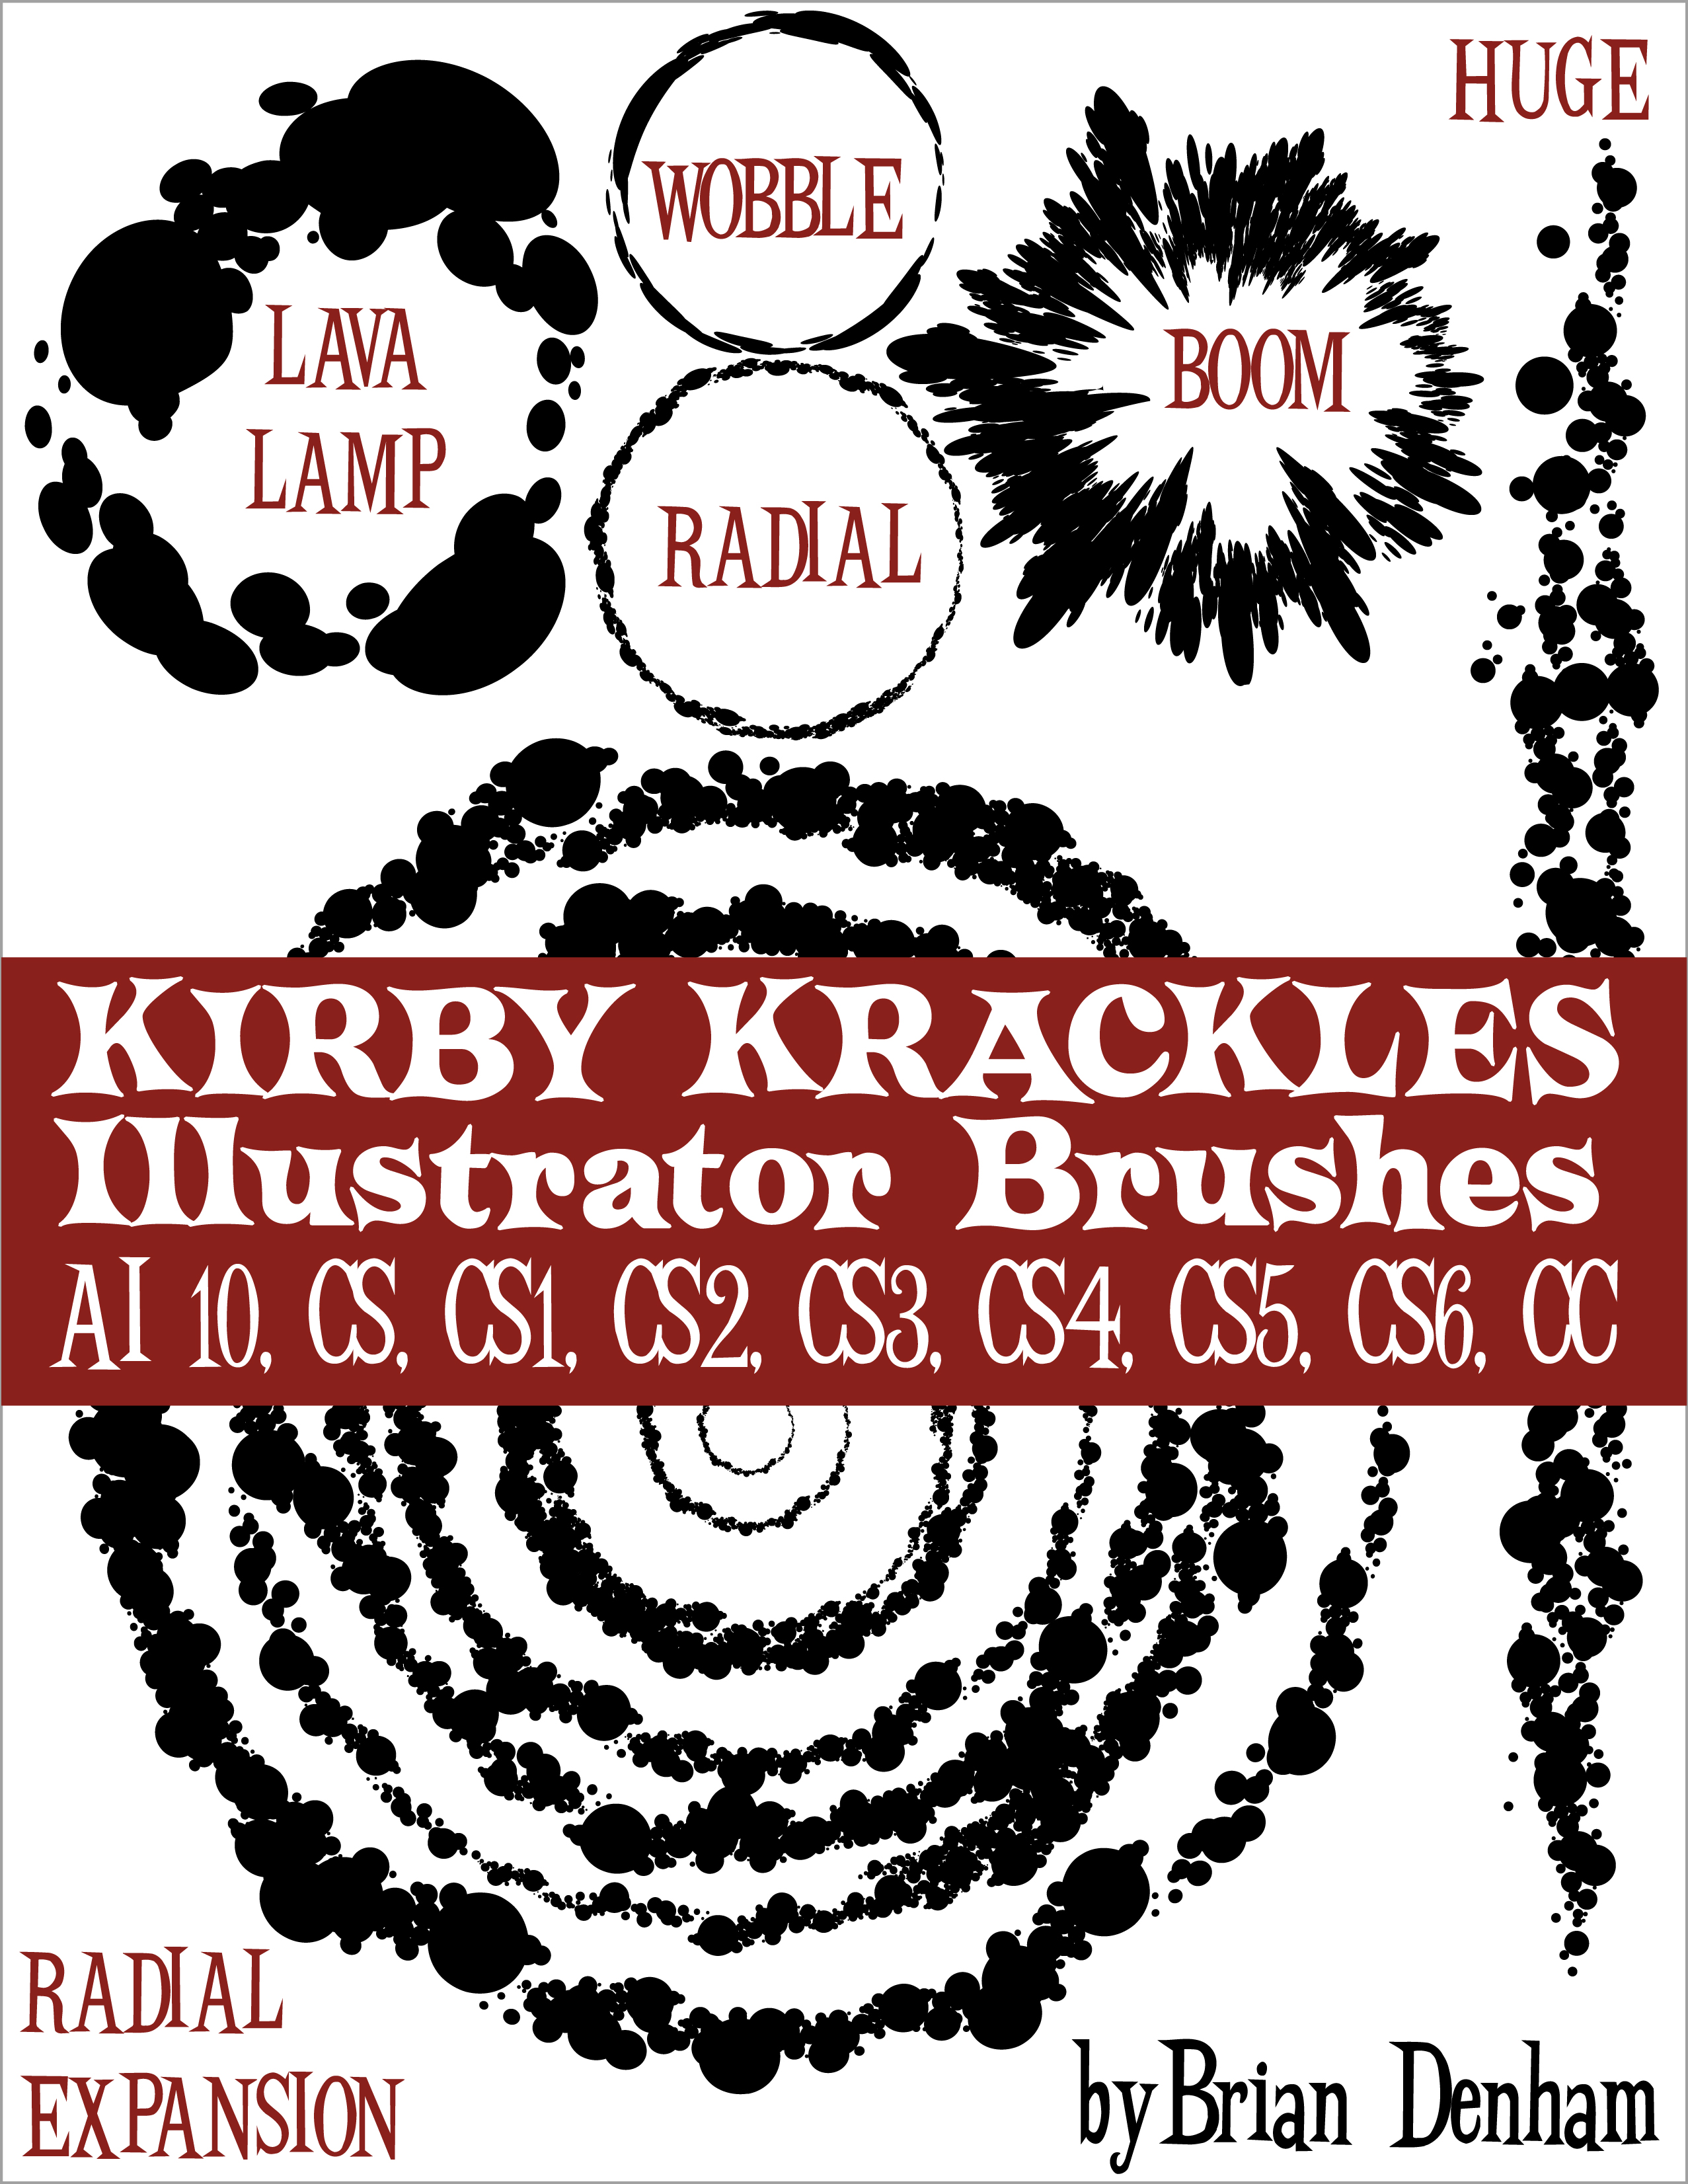 Kirby Krackles Illustrator Brushes